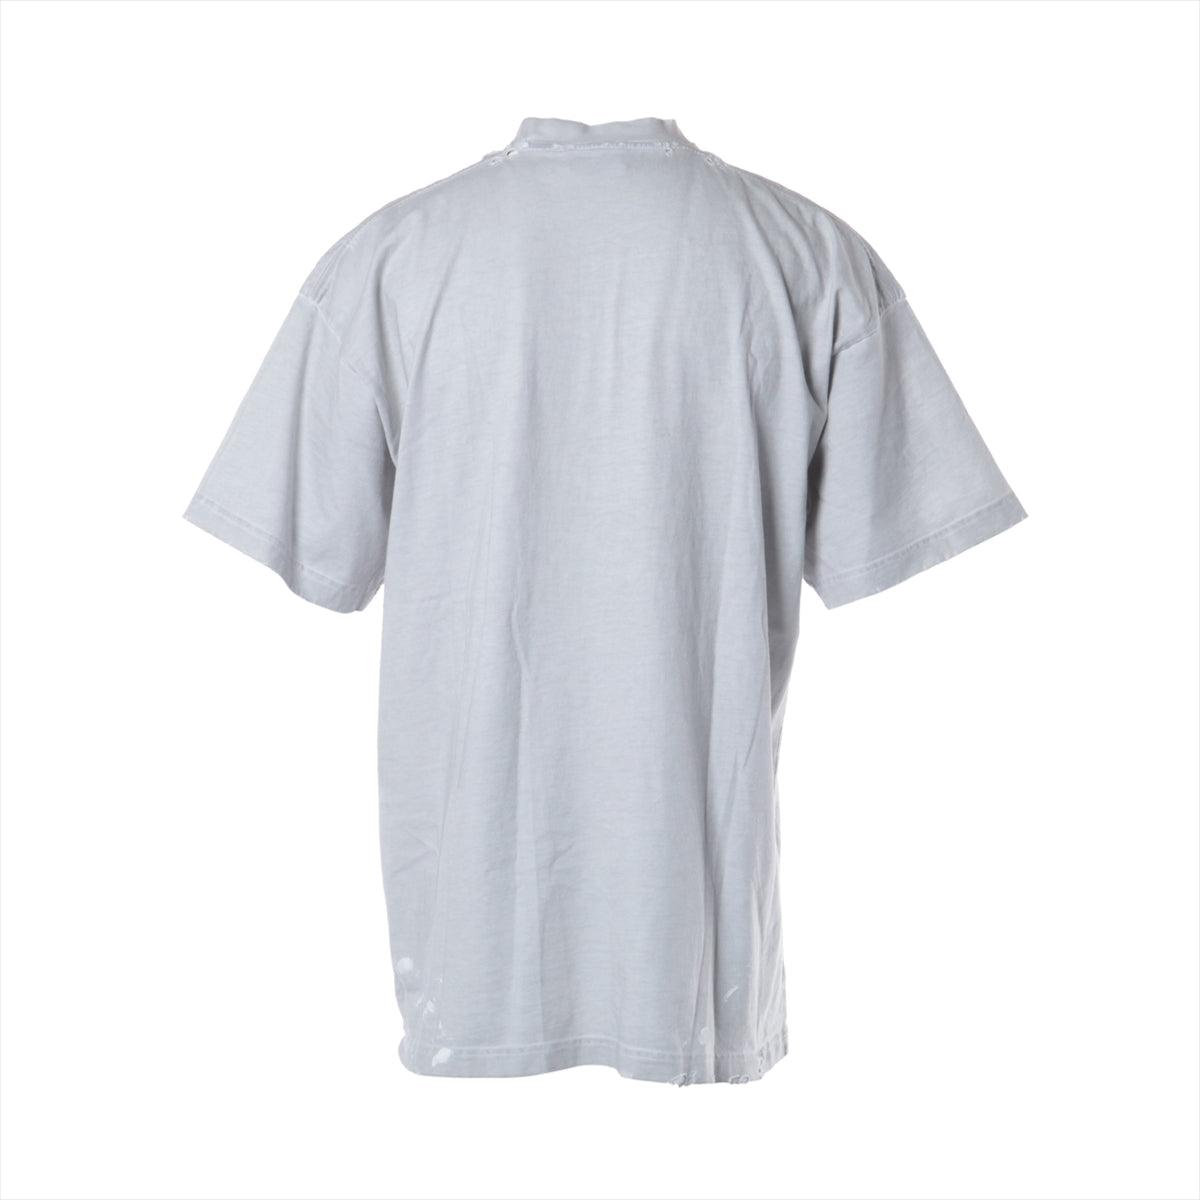 バレンシアガ 22AW コットン Tシャツ 1 メンズ グレー  694576 メタルロゴ クラッシュ加工 ペンキ加工 オーバーサイズ